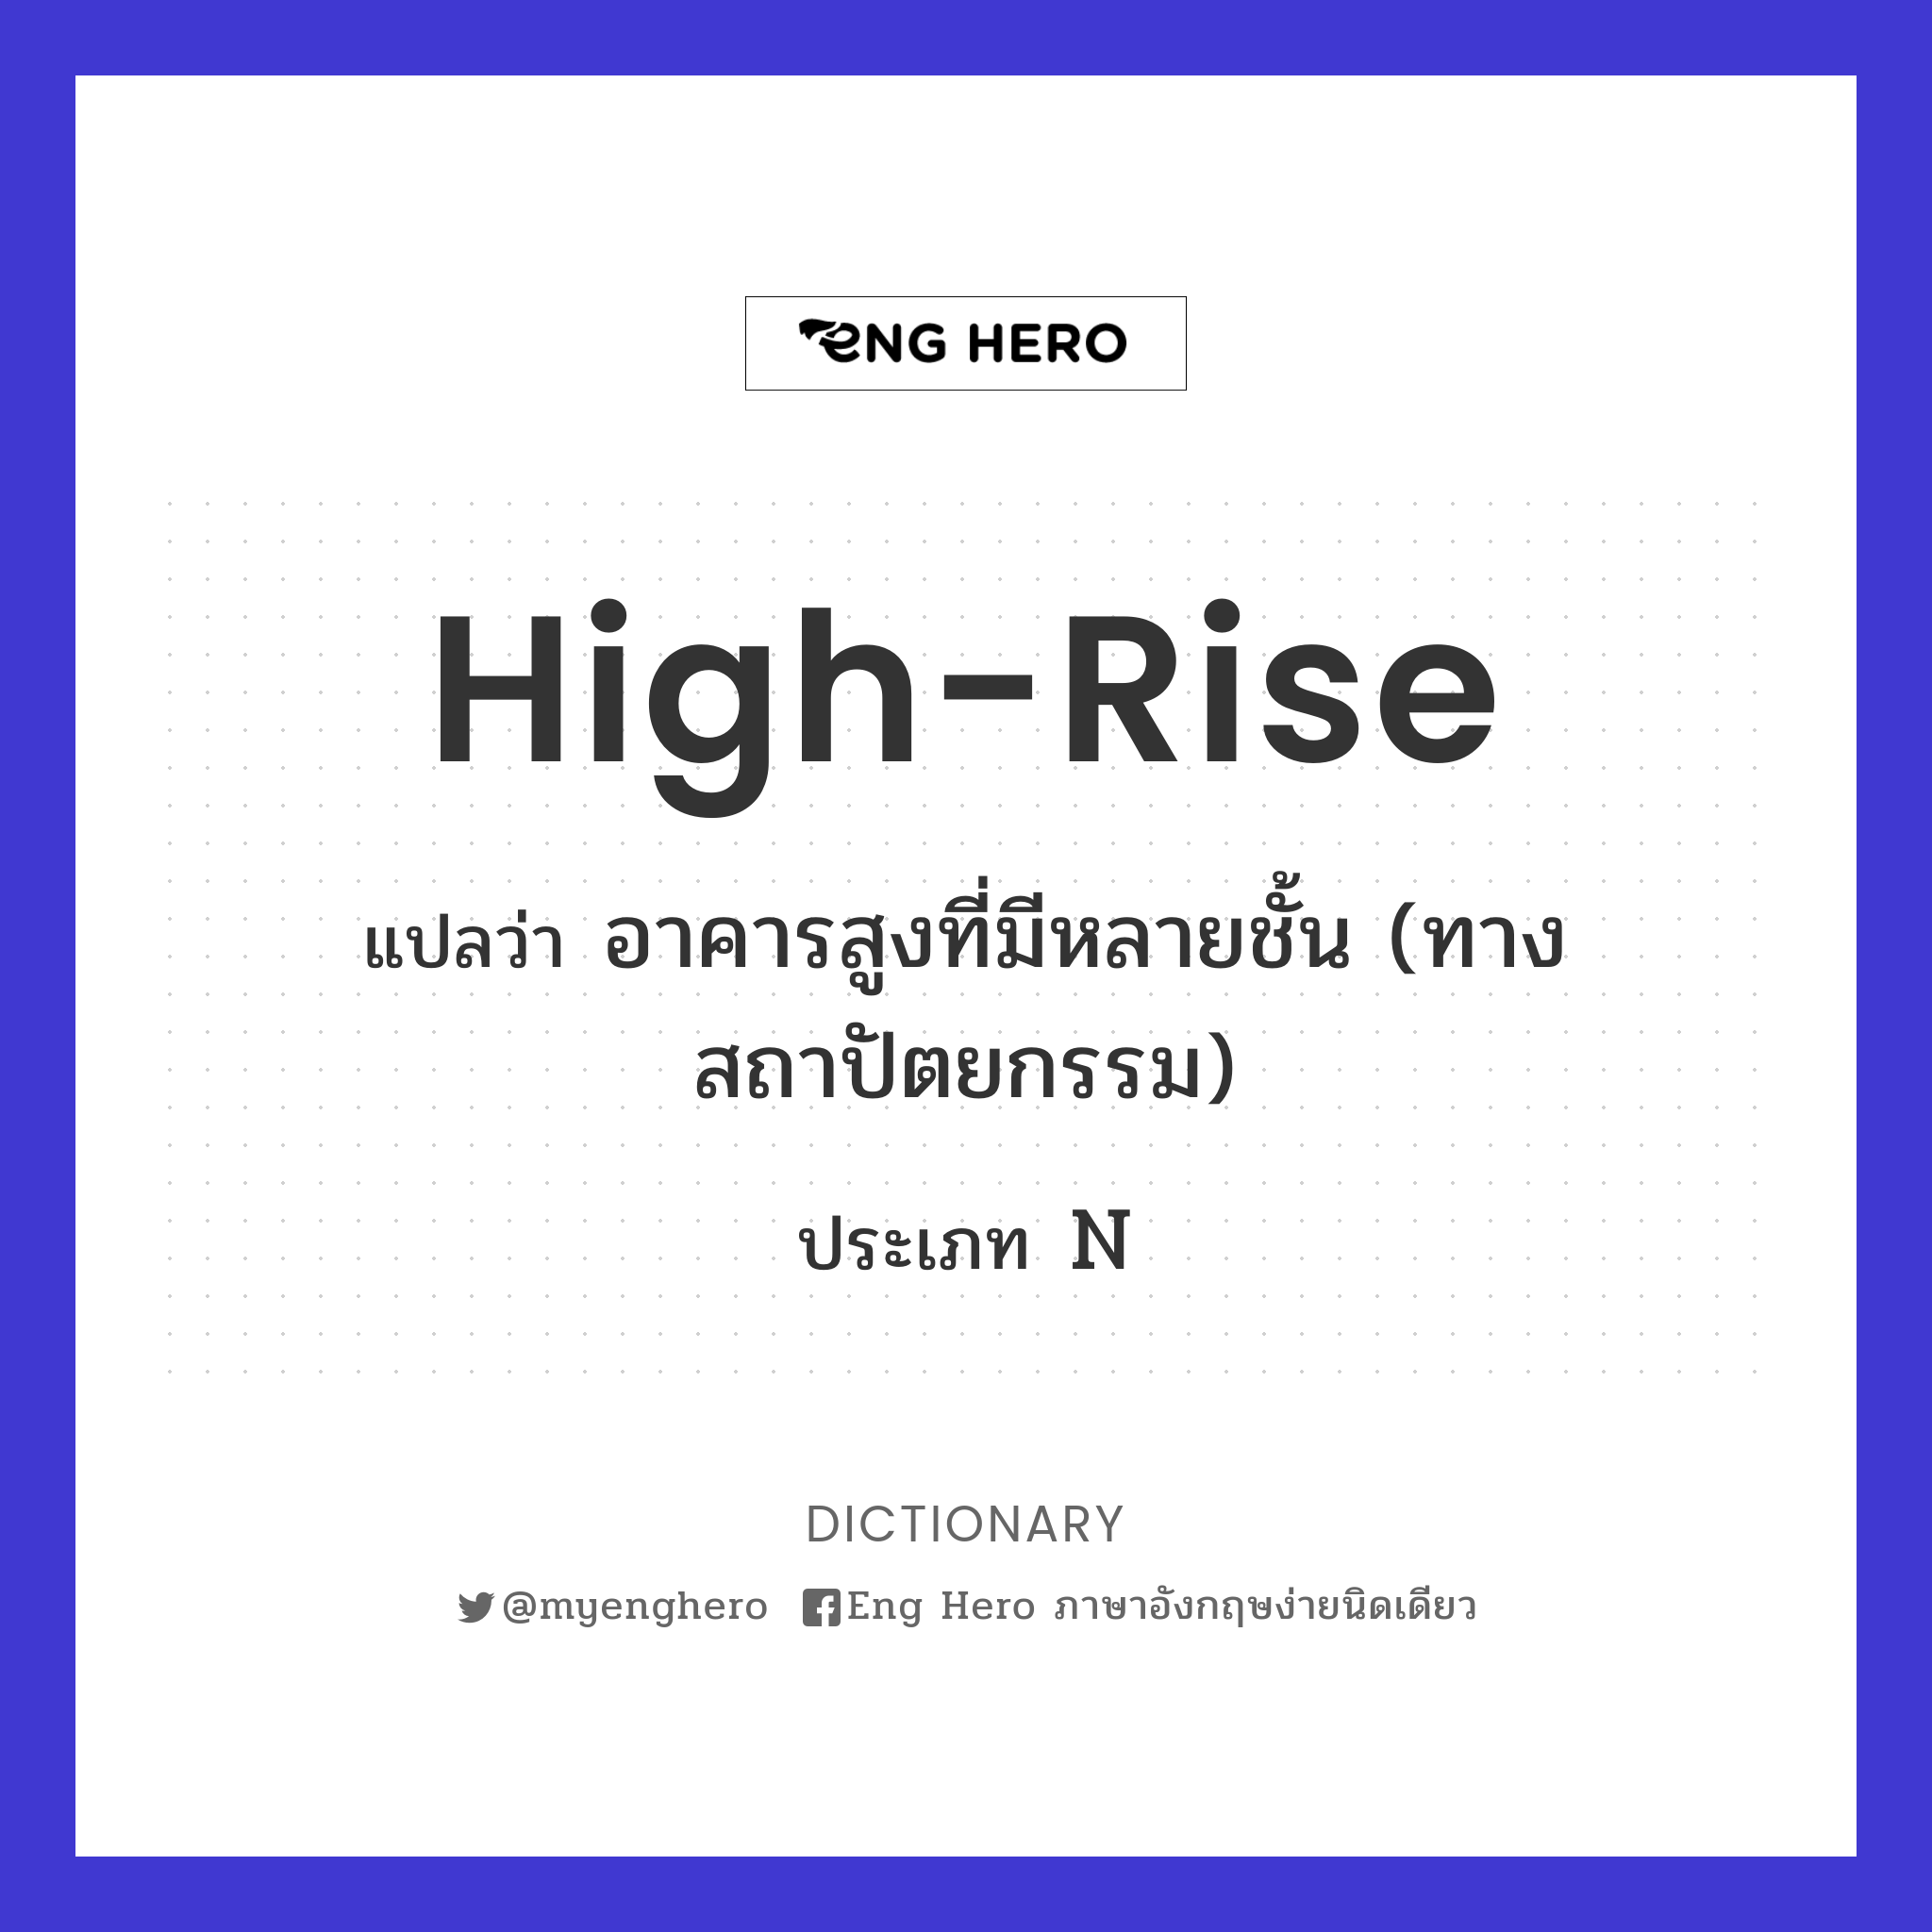 high-rise